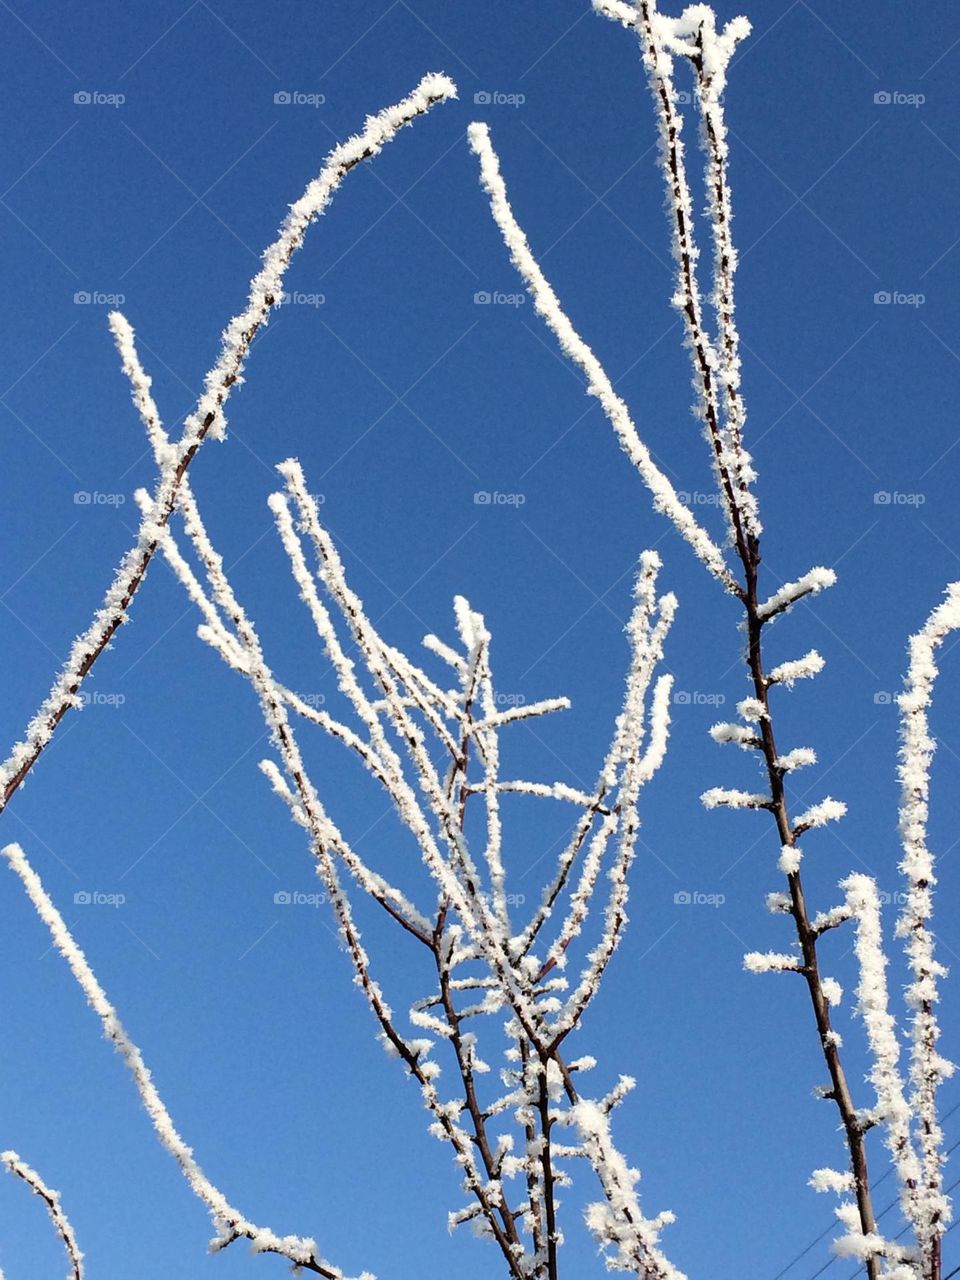 Frosty trees on blue sky